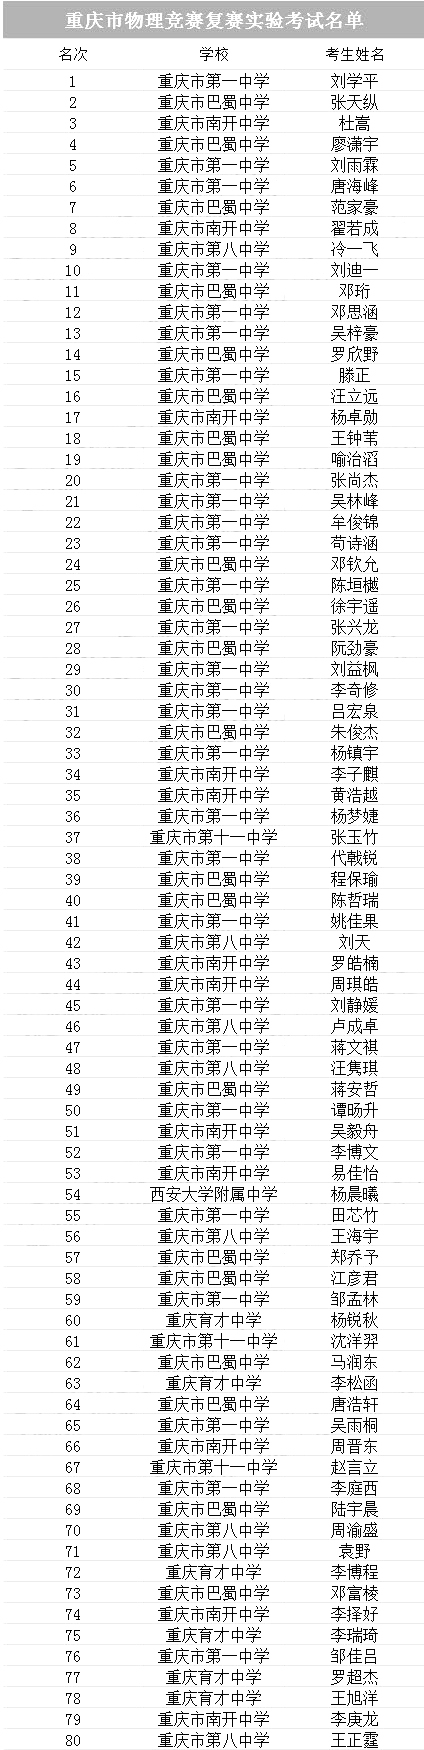 重庆市2018年第35届全国中学生物理竞赛复赛实验考试名单